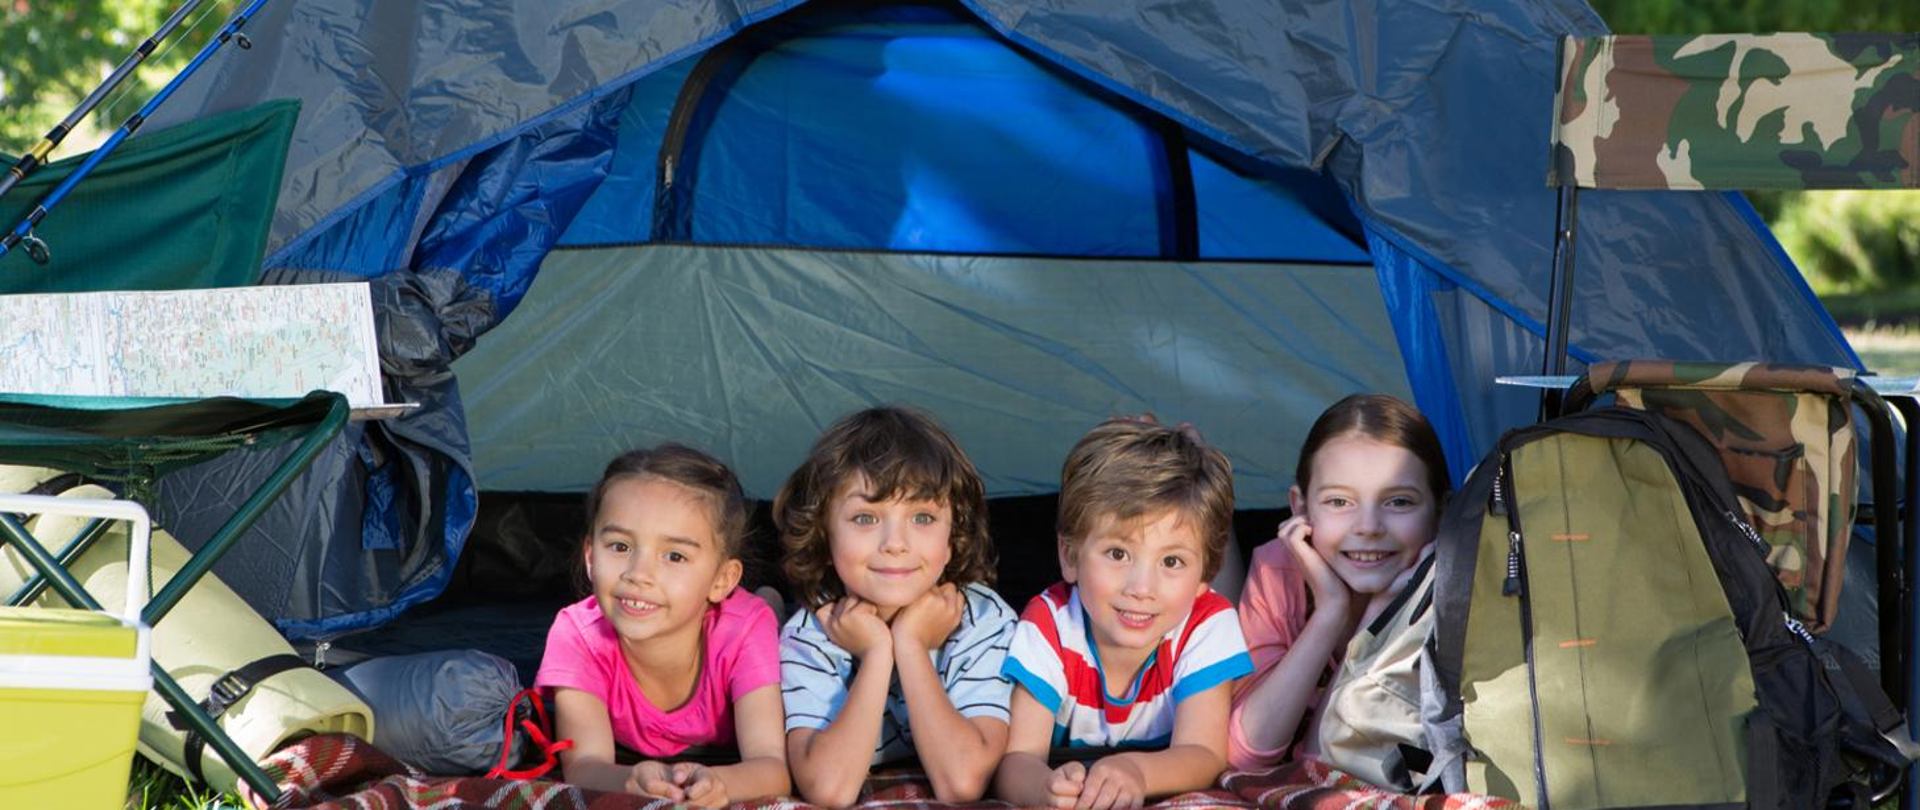 czwórka dzieci uśmiecha się i leży na brzuchu w otwartym namiocie